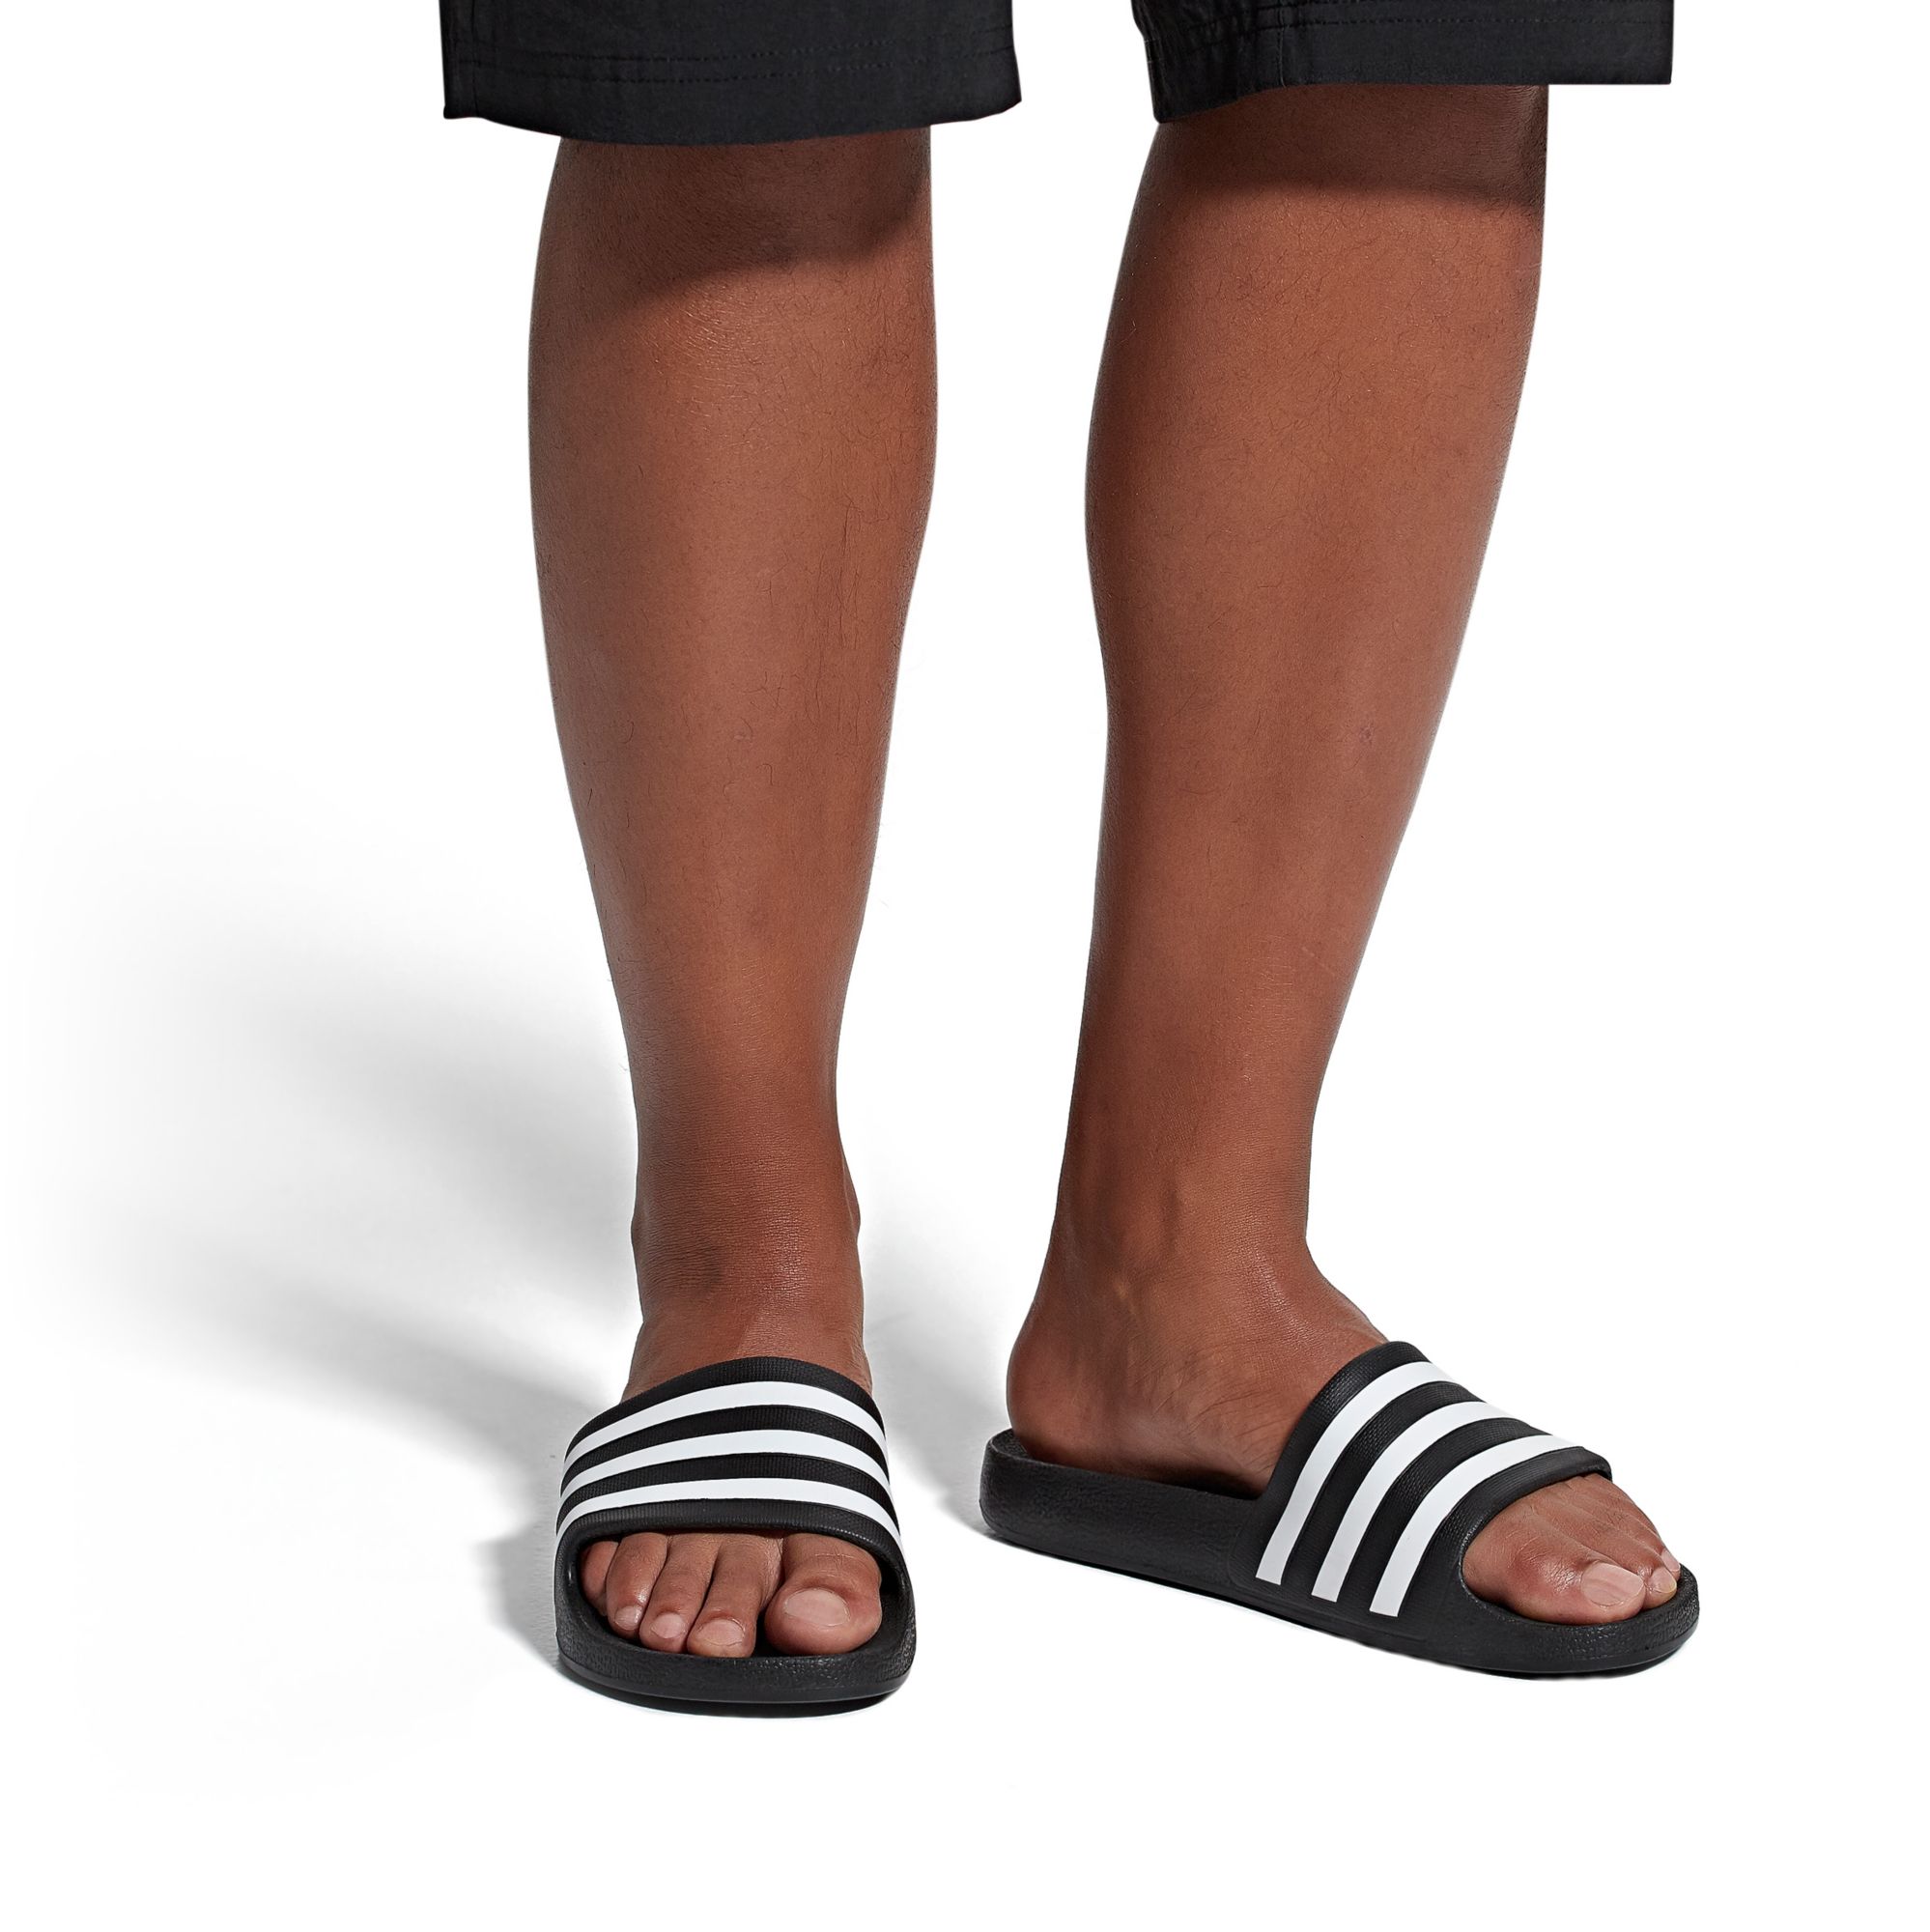 men's adidas swim aqualette slides